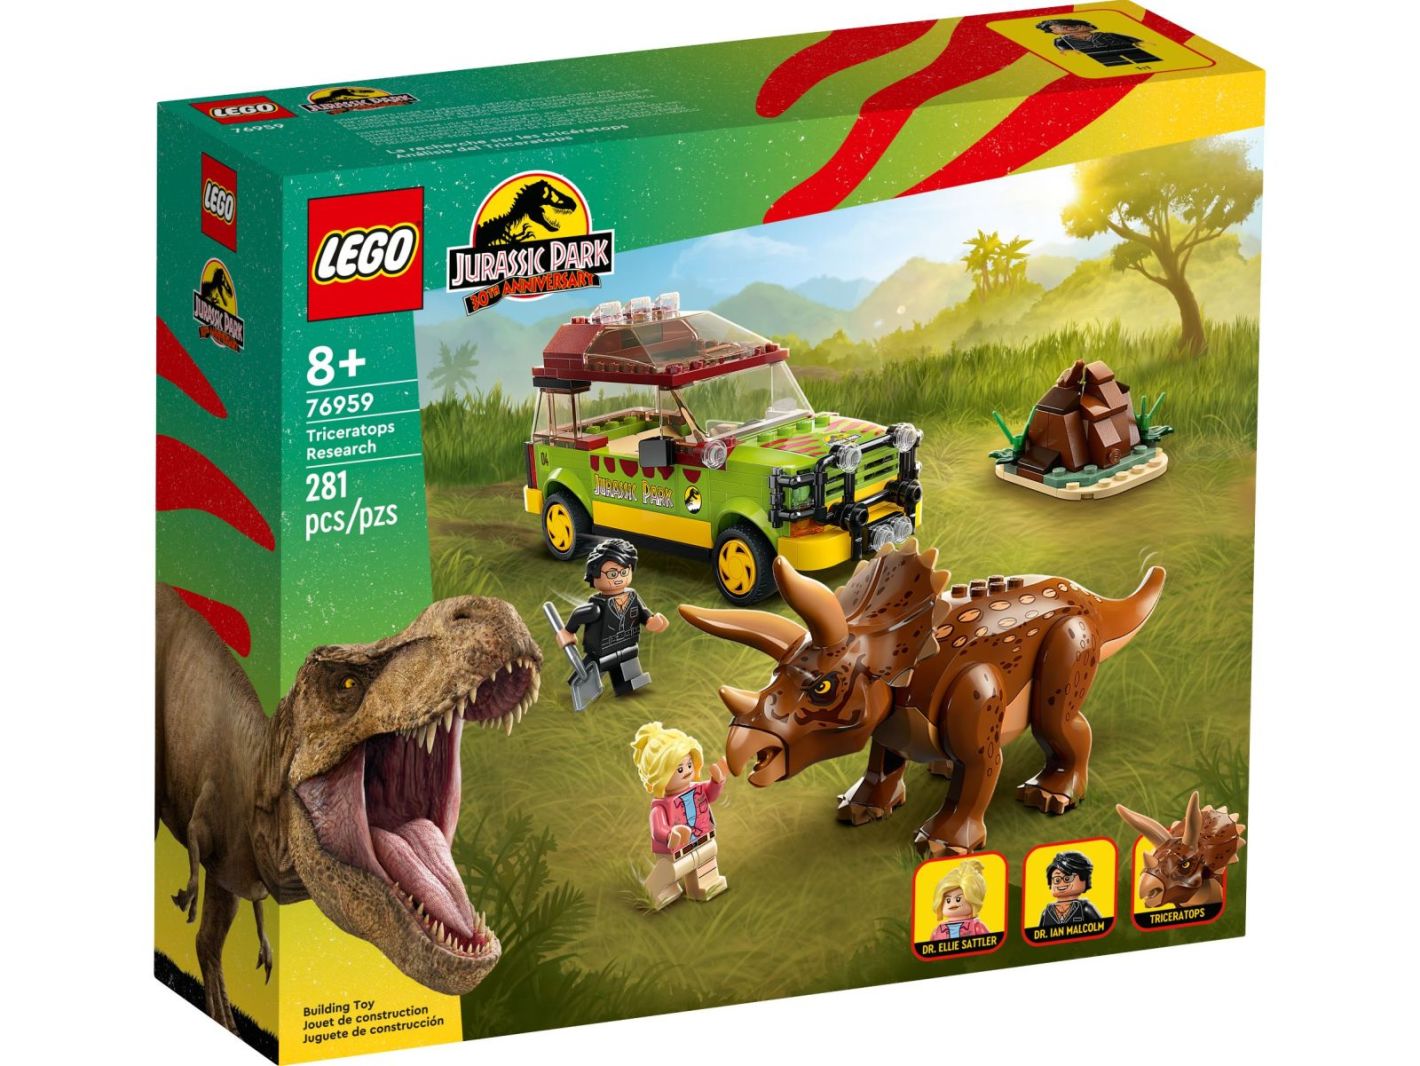 Triceratops-Forschung 76959 kaufen LEGO Jurassic World